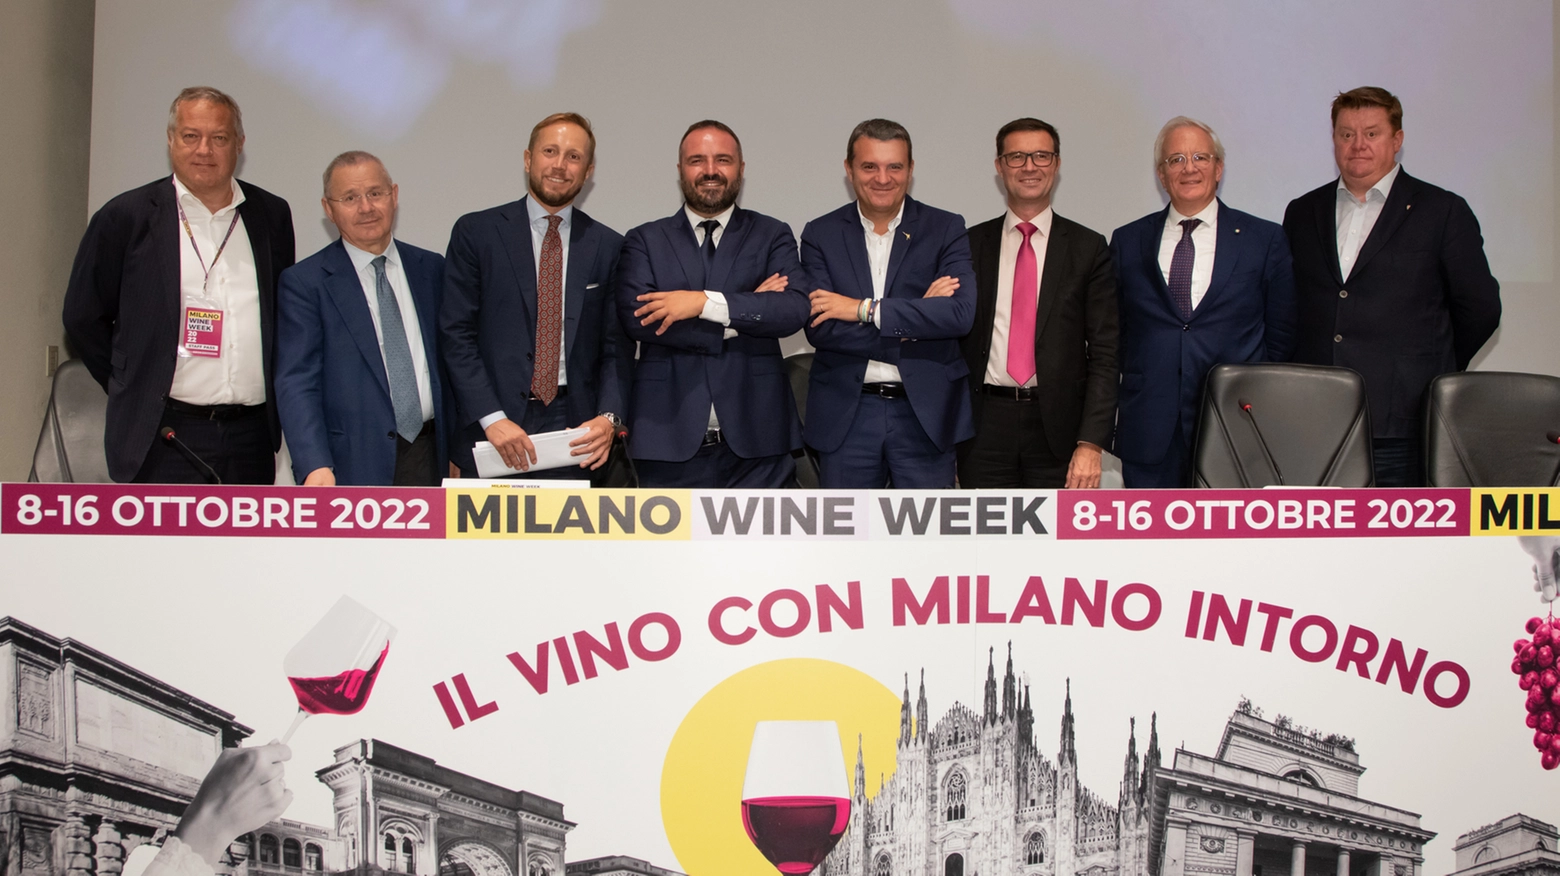 La presentazione della Milano Wine Week